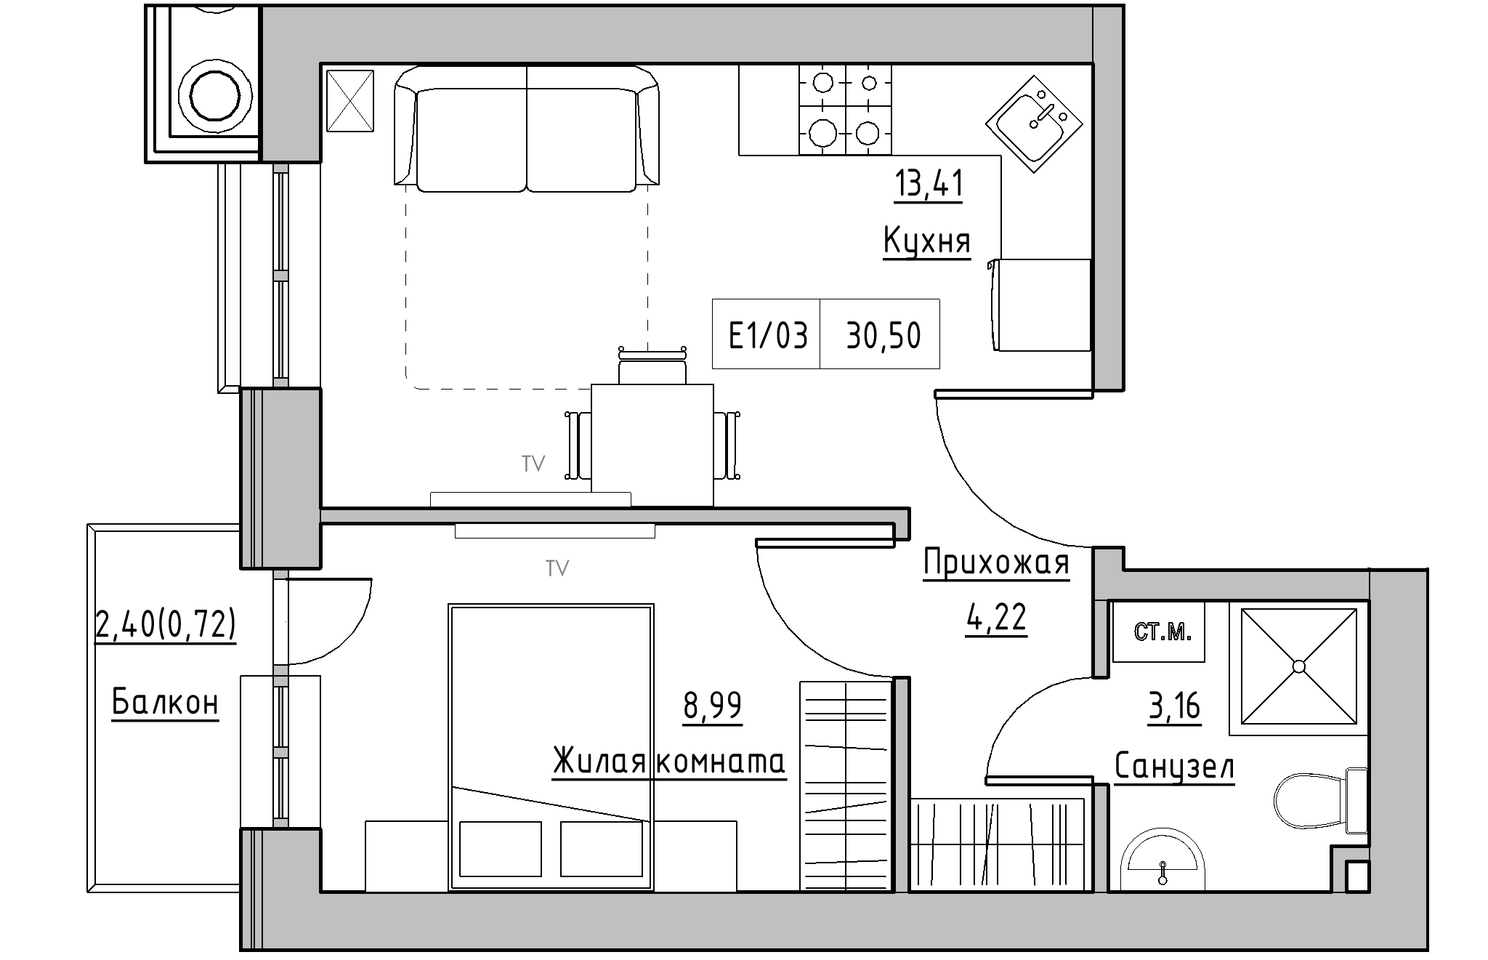 Планировка 1-к квартира площей 30.5м2, KS-010-02/0012.